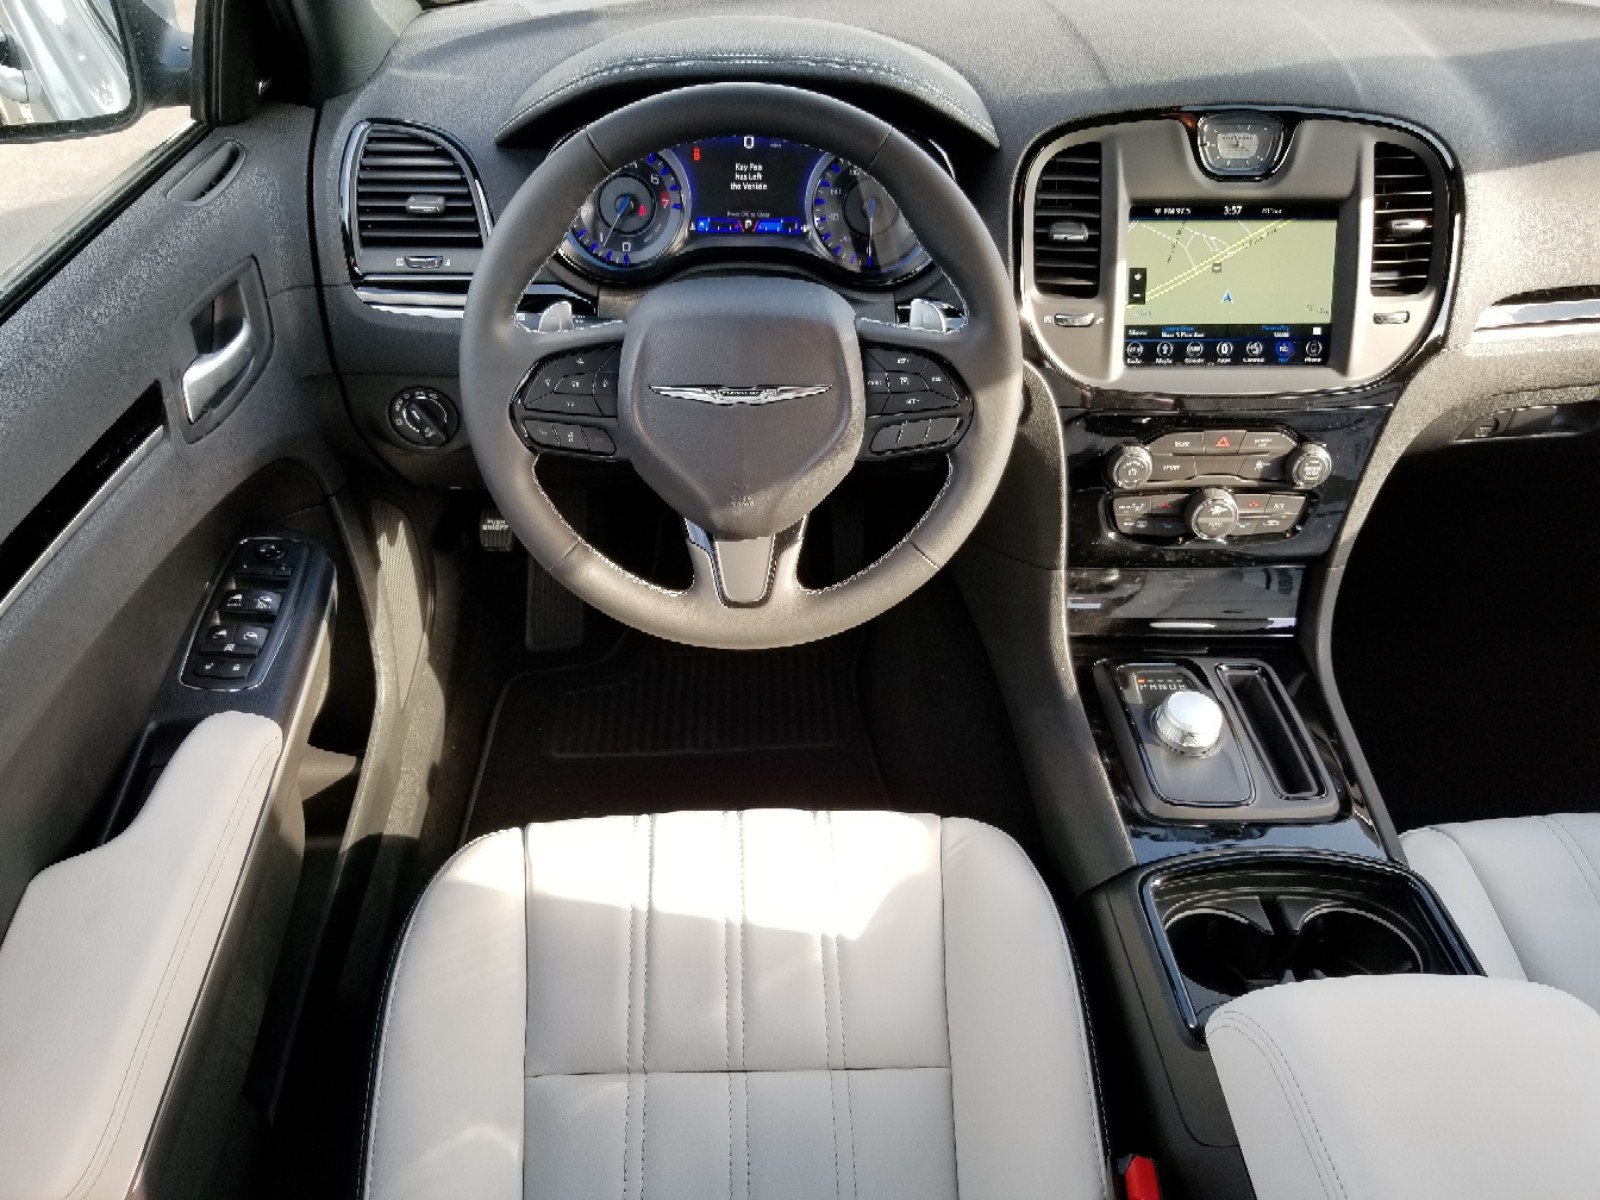 New 2019 Chrysler 300s